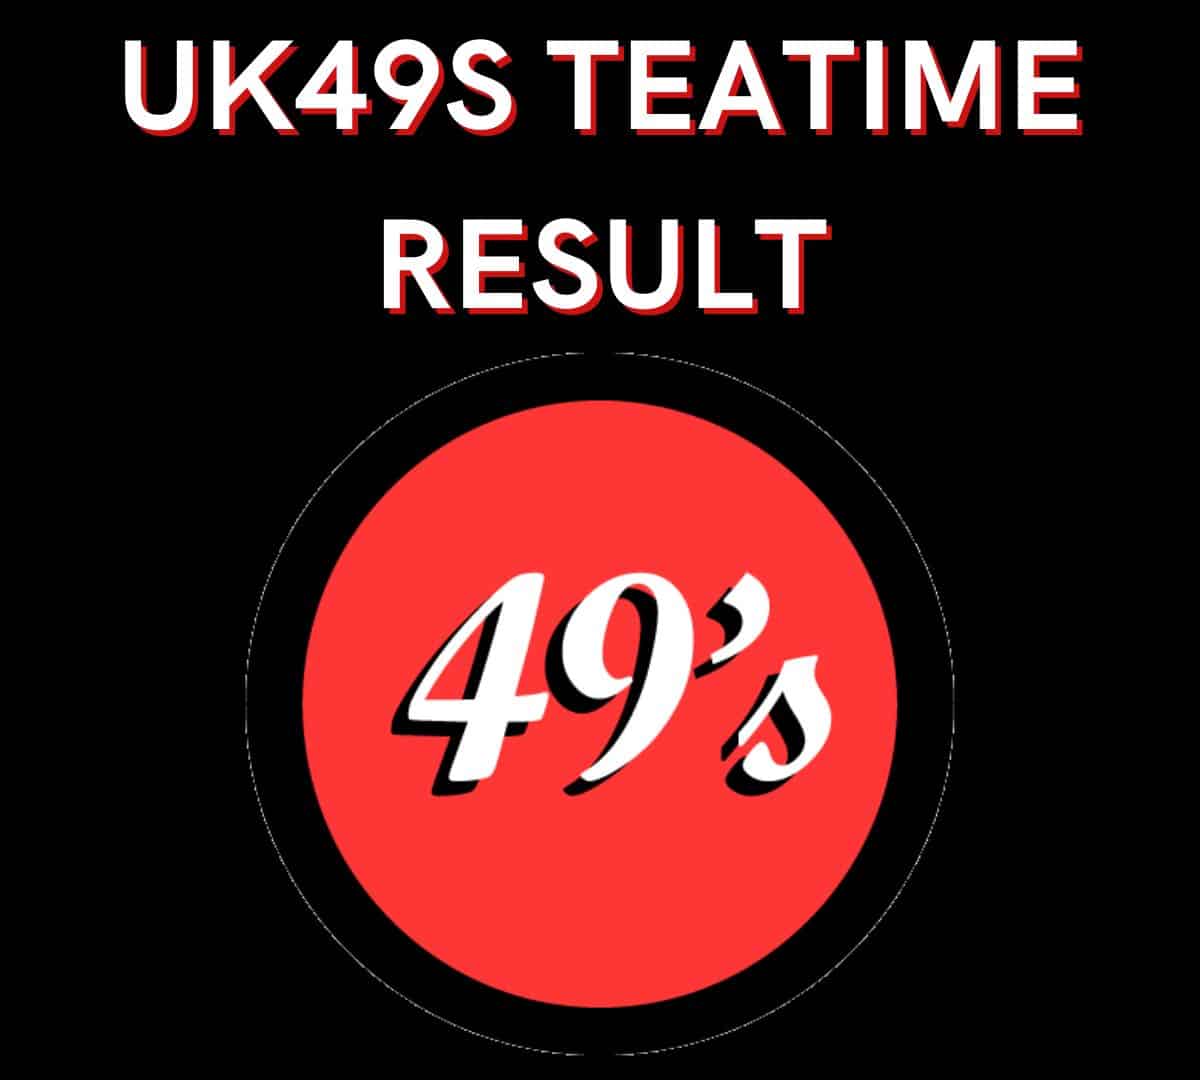 Uk49s Teatime Result